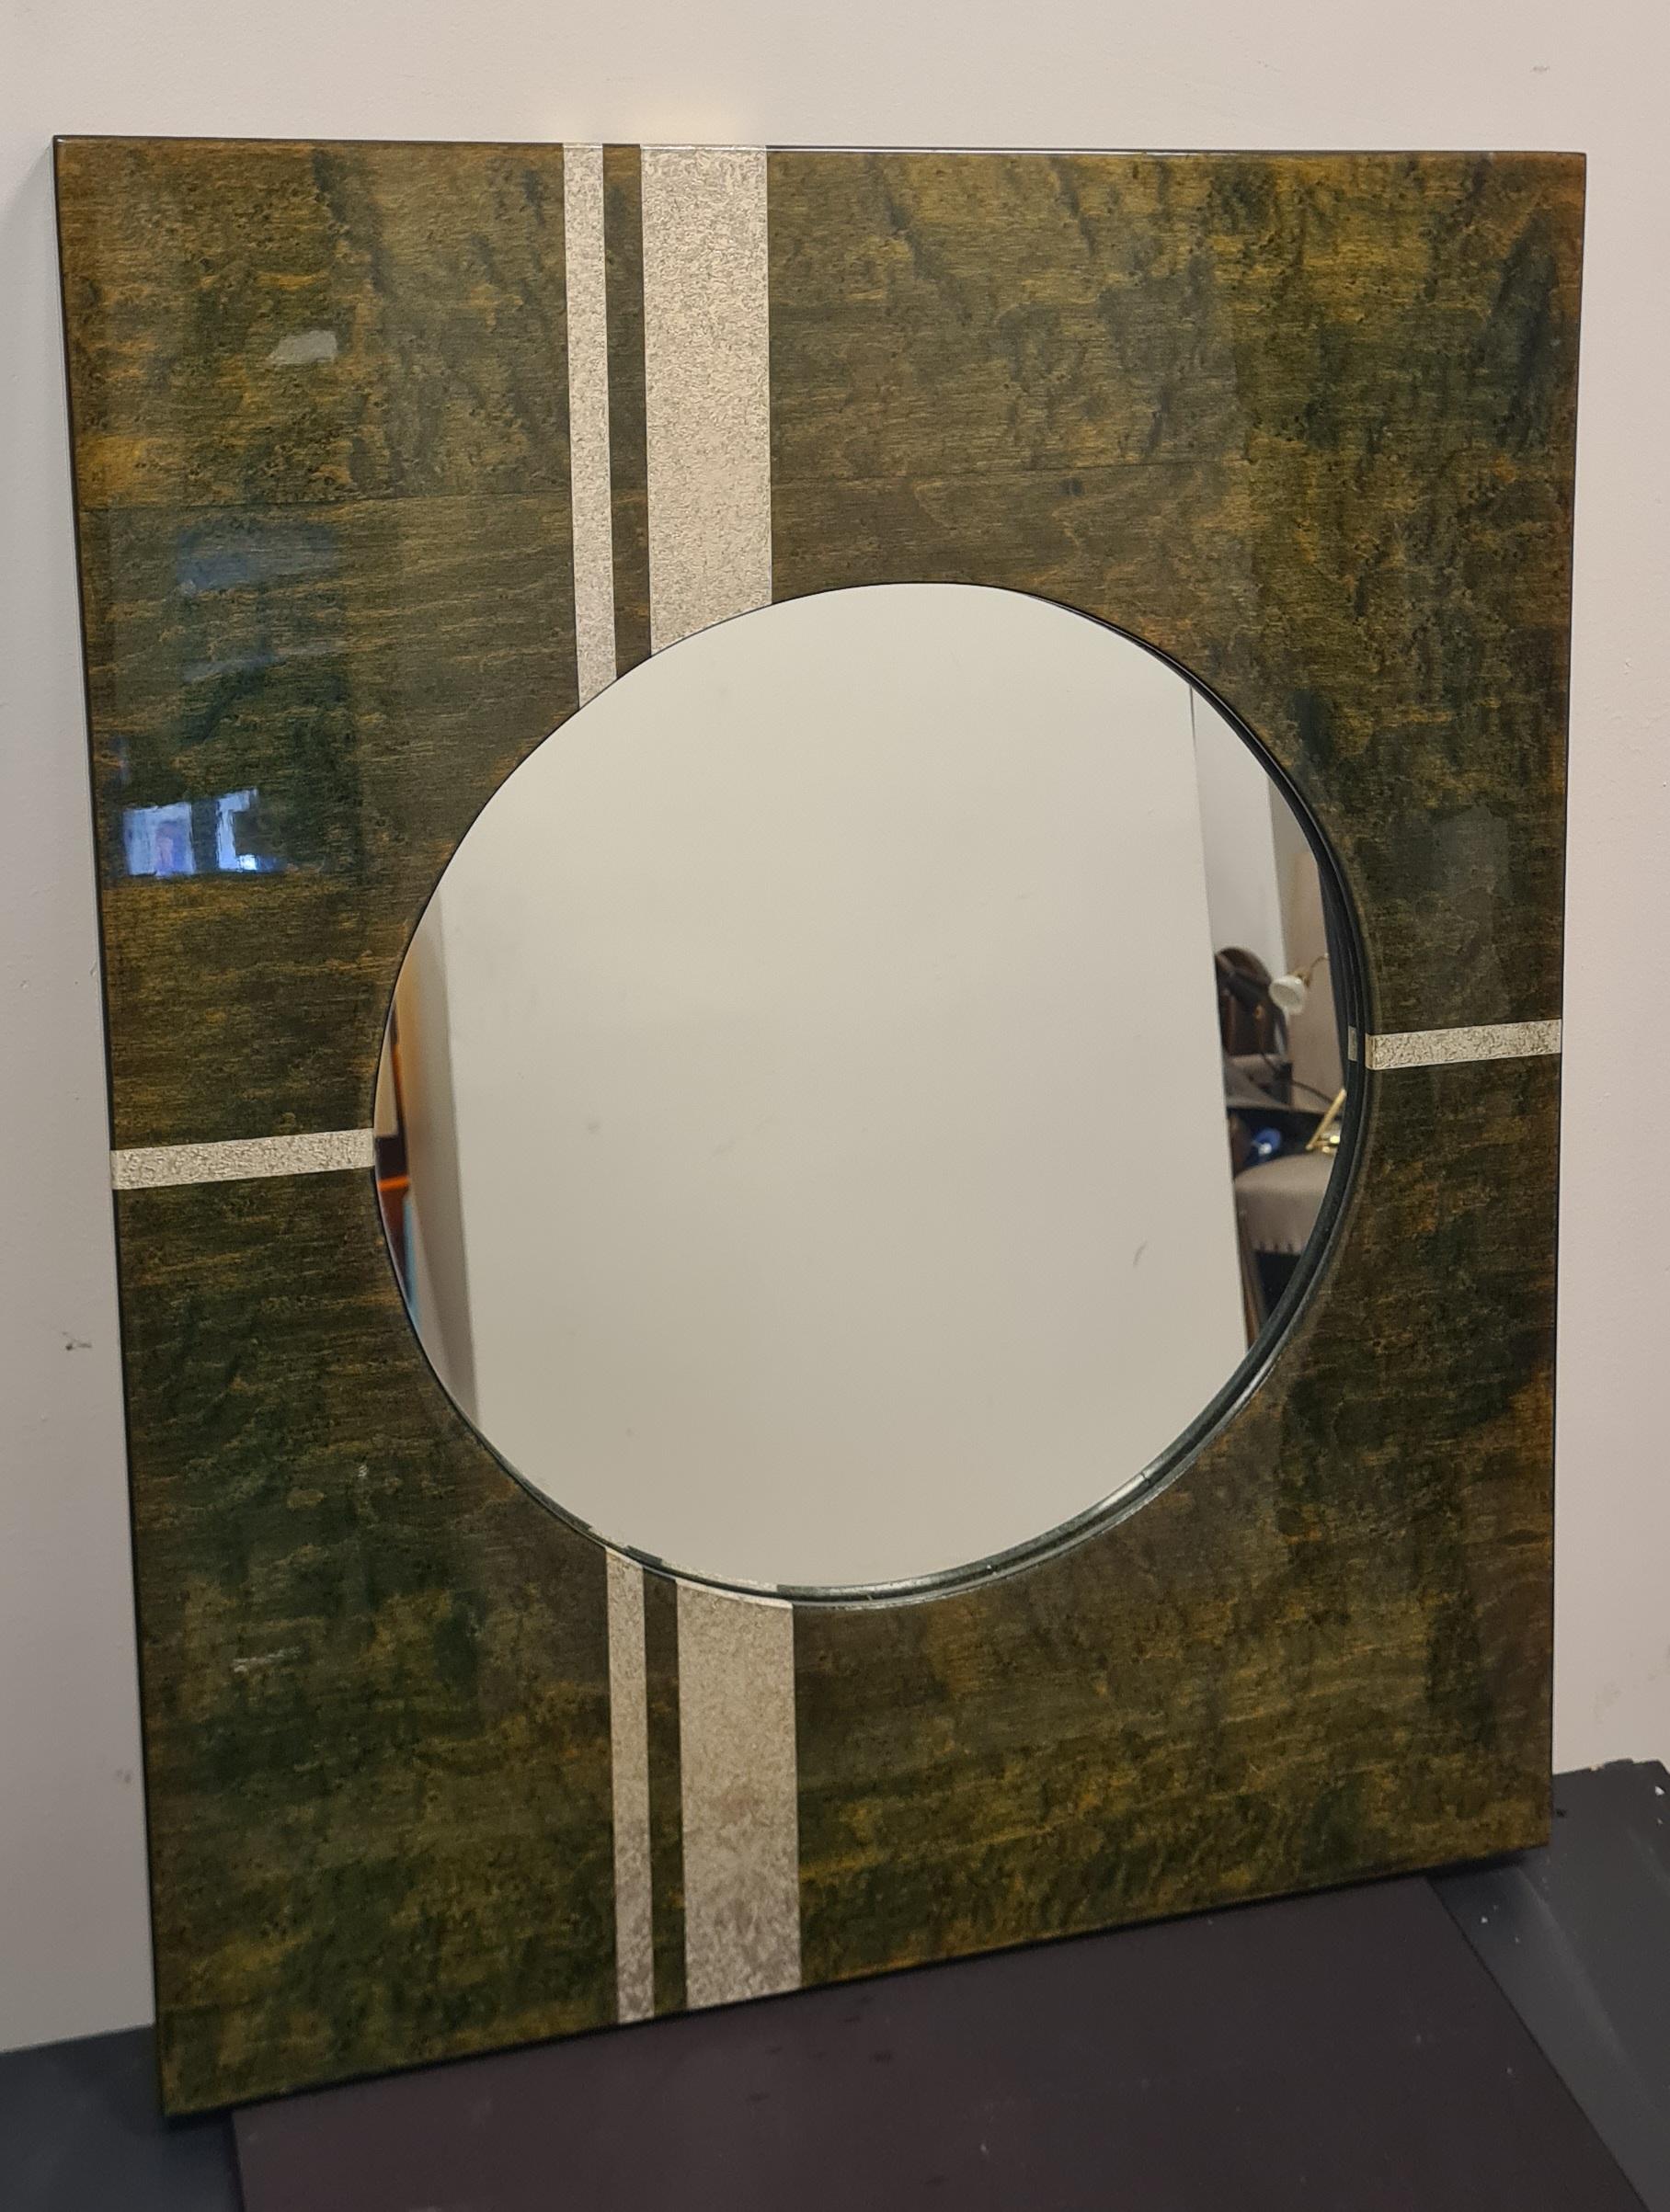 Specchio dalla forma e lo stile stipo degli anni 70'.

Lo specchio è di forma rotonda con una cornice rettangolare in legno laccato verde e decorazioni argentate.

Ideal für einen Eingangsbereich oder eine Tasche spendet dieses Exemplar Farbe und